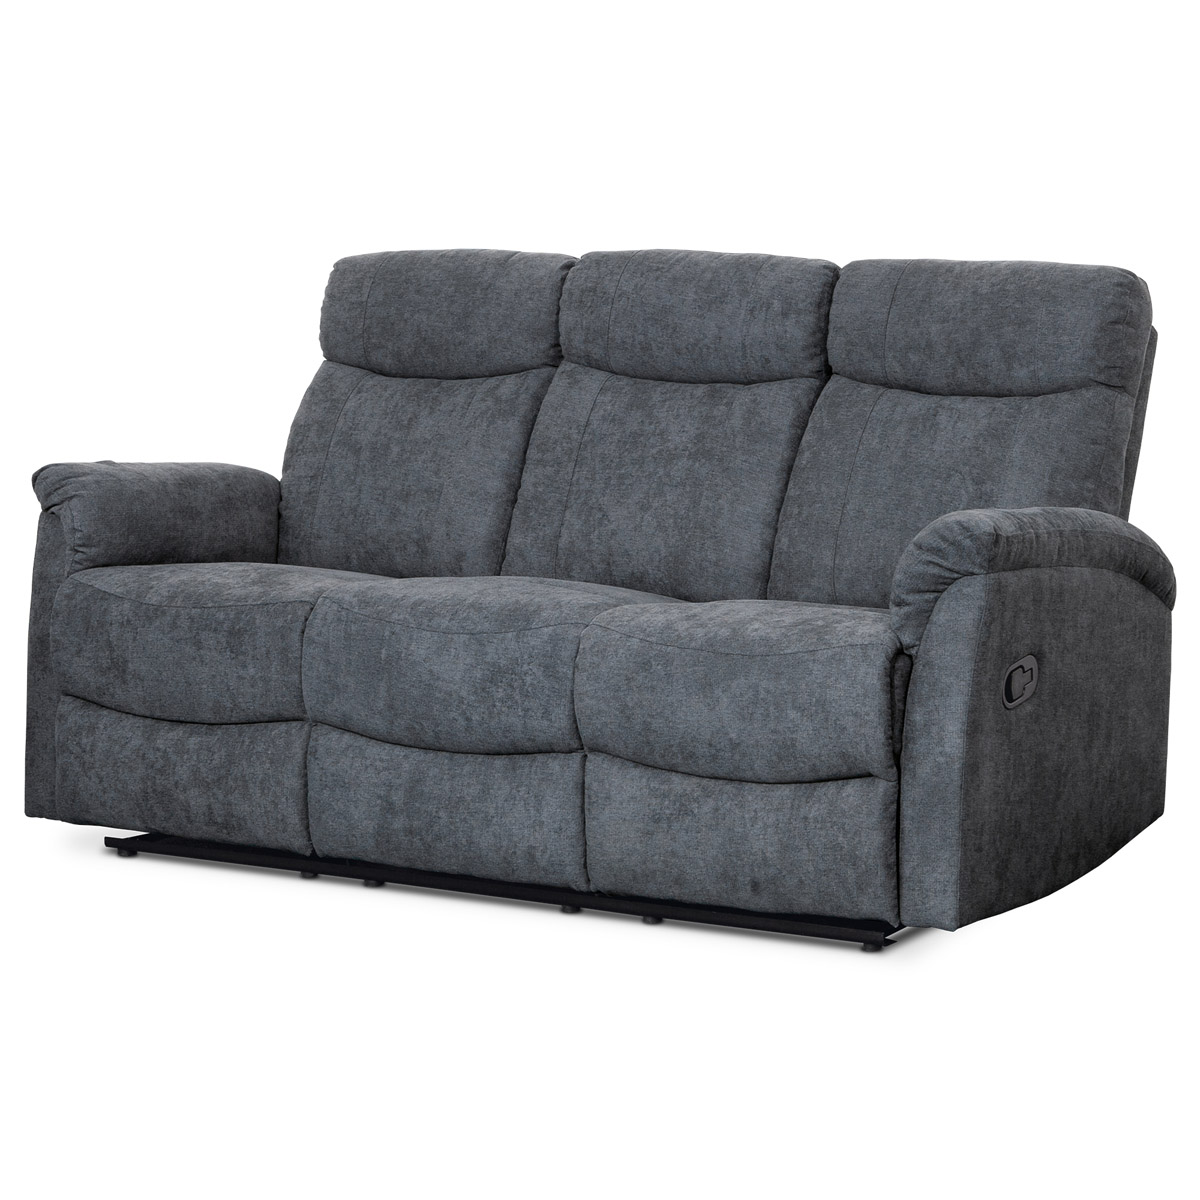 Relaxační sedačka 3+1+1, potah šedá látka se strukturou vintage, funkce Relax I/II s aretací - ASD-311 GREY AKCE